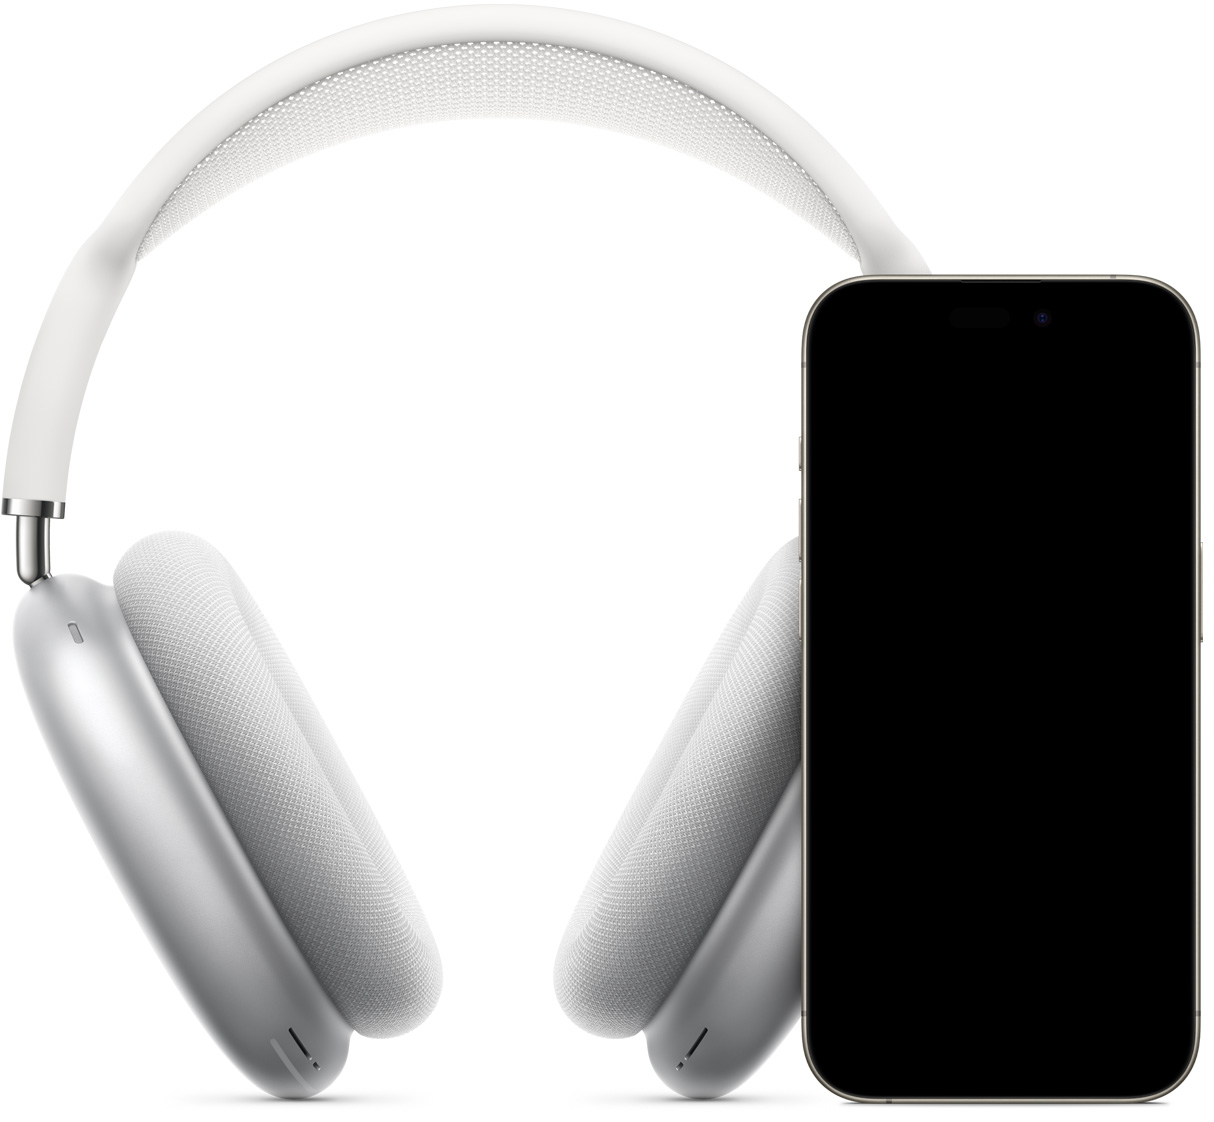 显示着即时设置界面的 iPhone 后面放着银色 AirPods Max，手机屏幕上显示有“连接”按钮，轻点一下即可配对 AirPods Max。